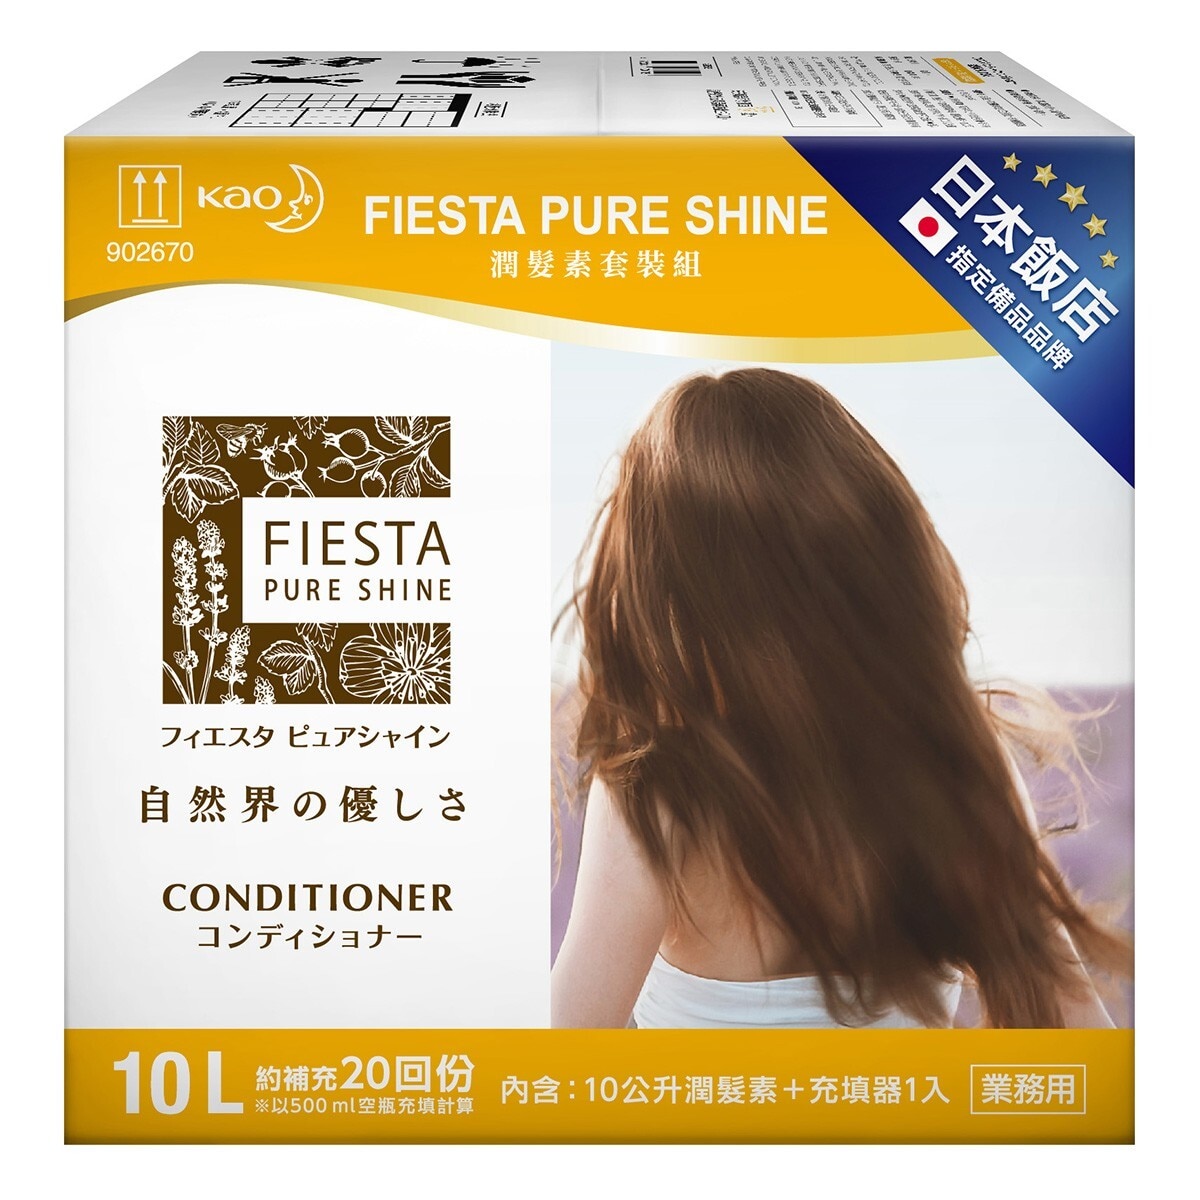 Fiesta Pure Shine 潤髮素套裝組 10公升 X 1入+ 充填器 X 1入